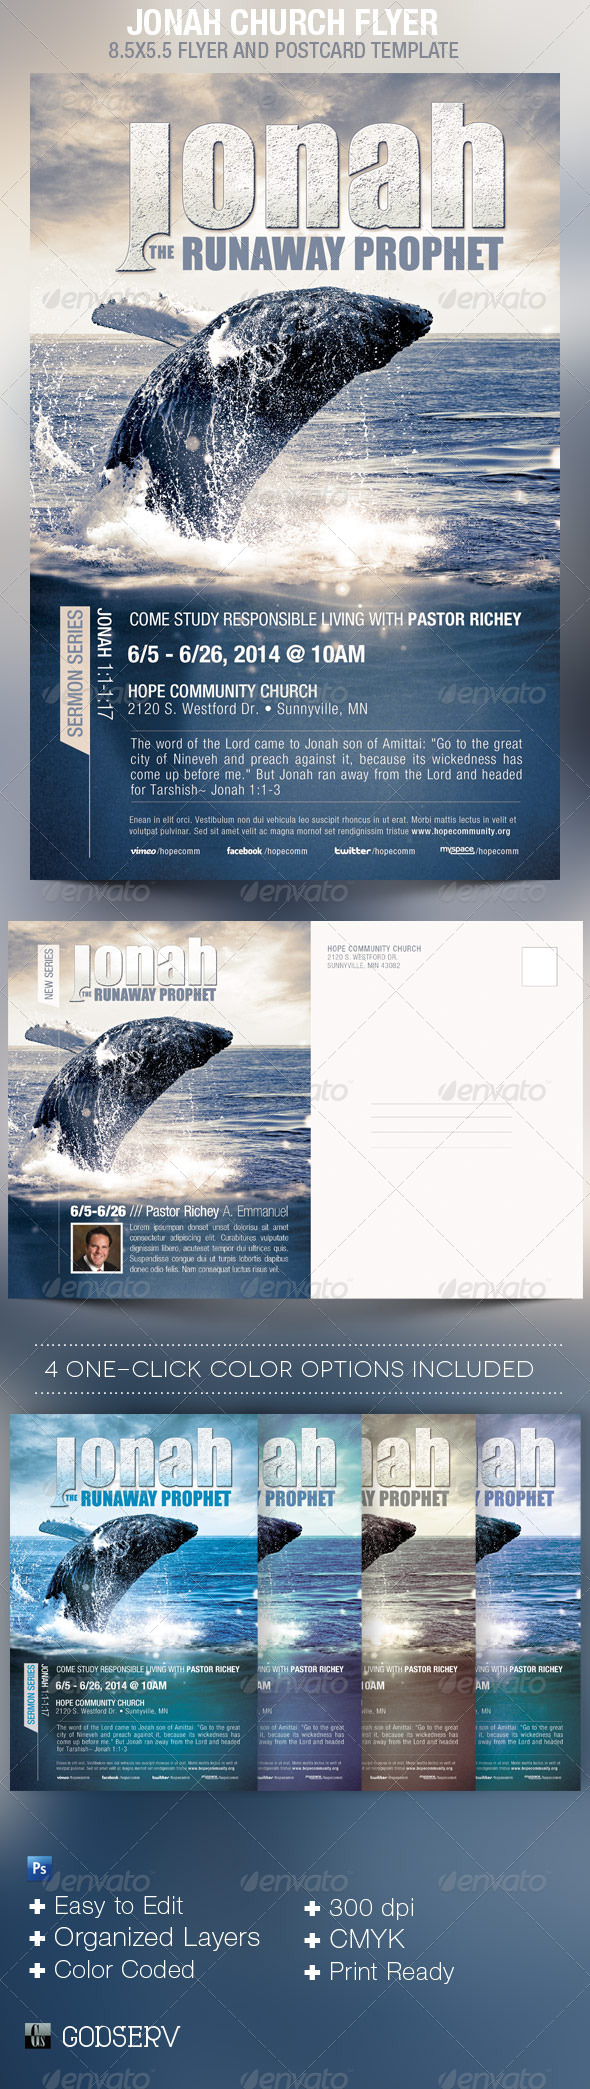 Jonah-Church-Flyer-Template-Preview